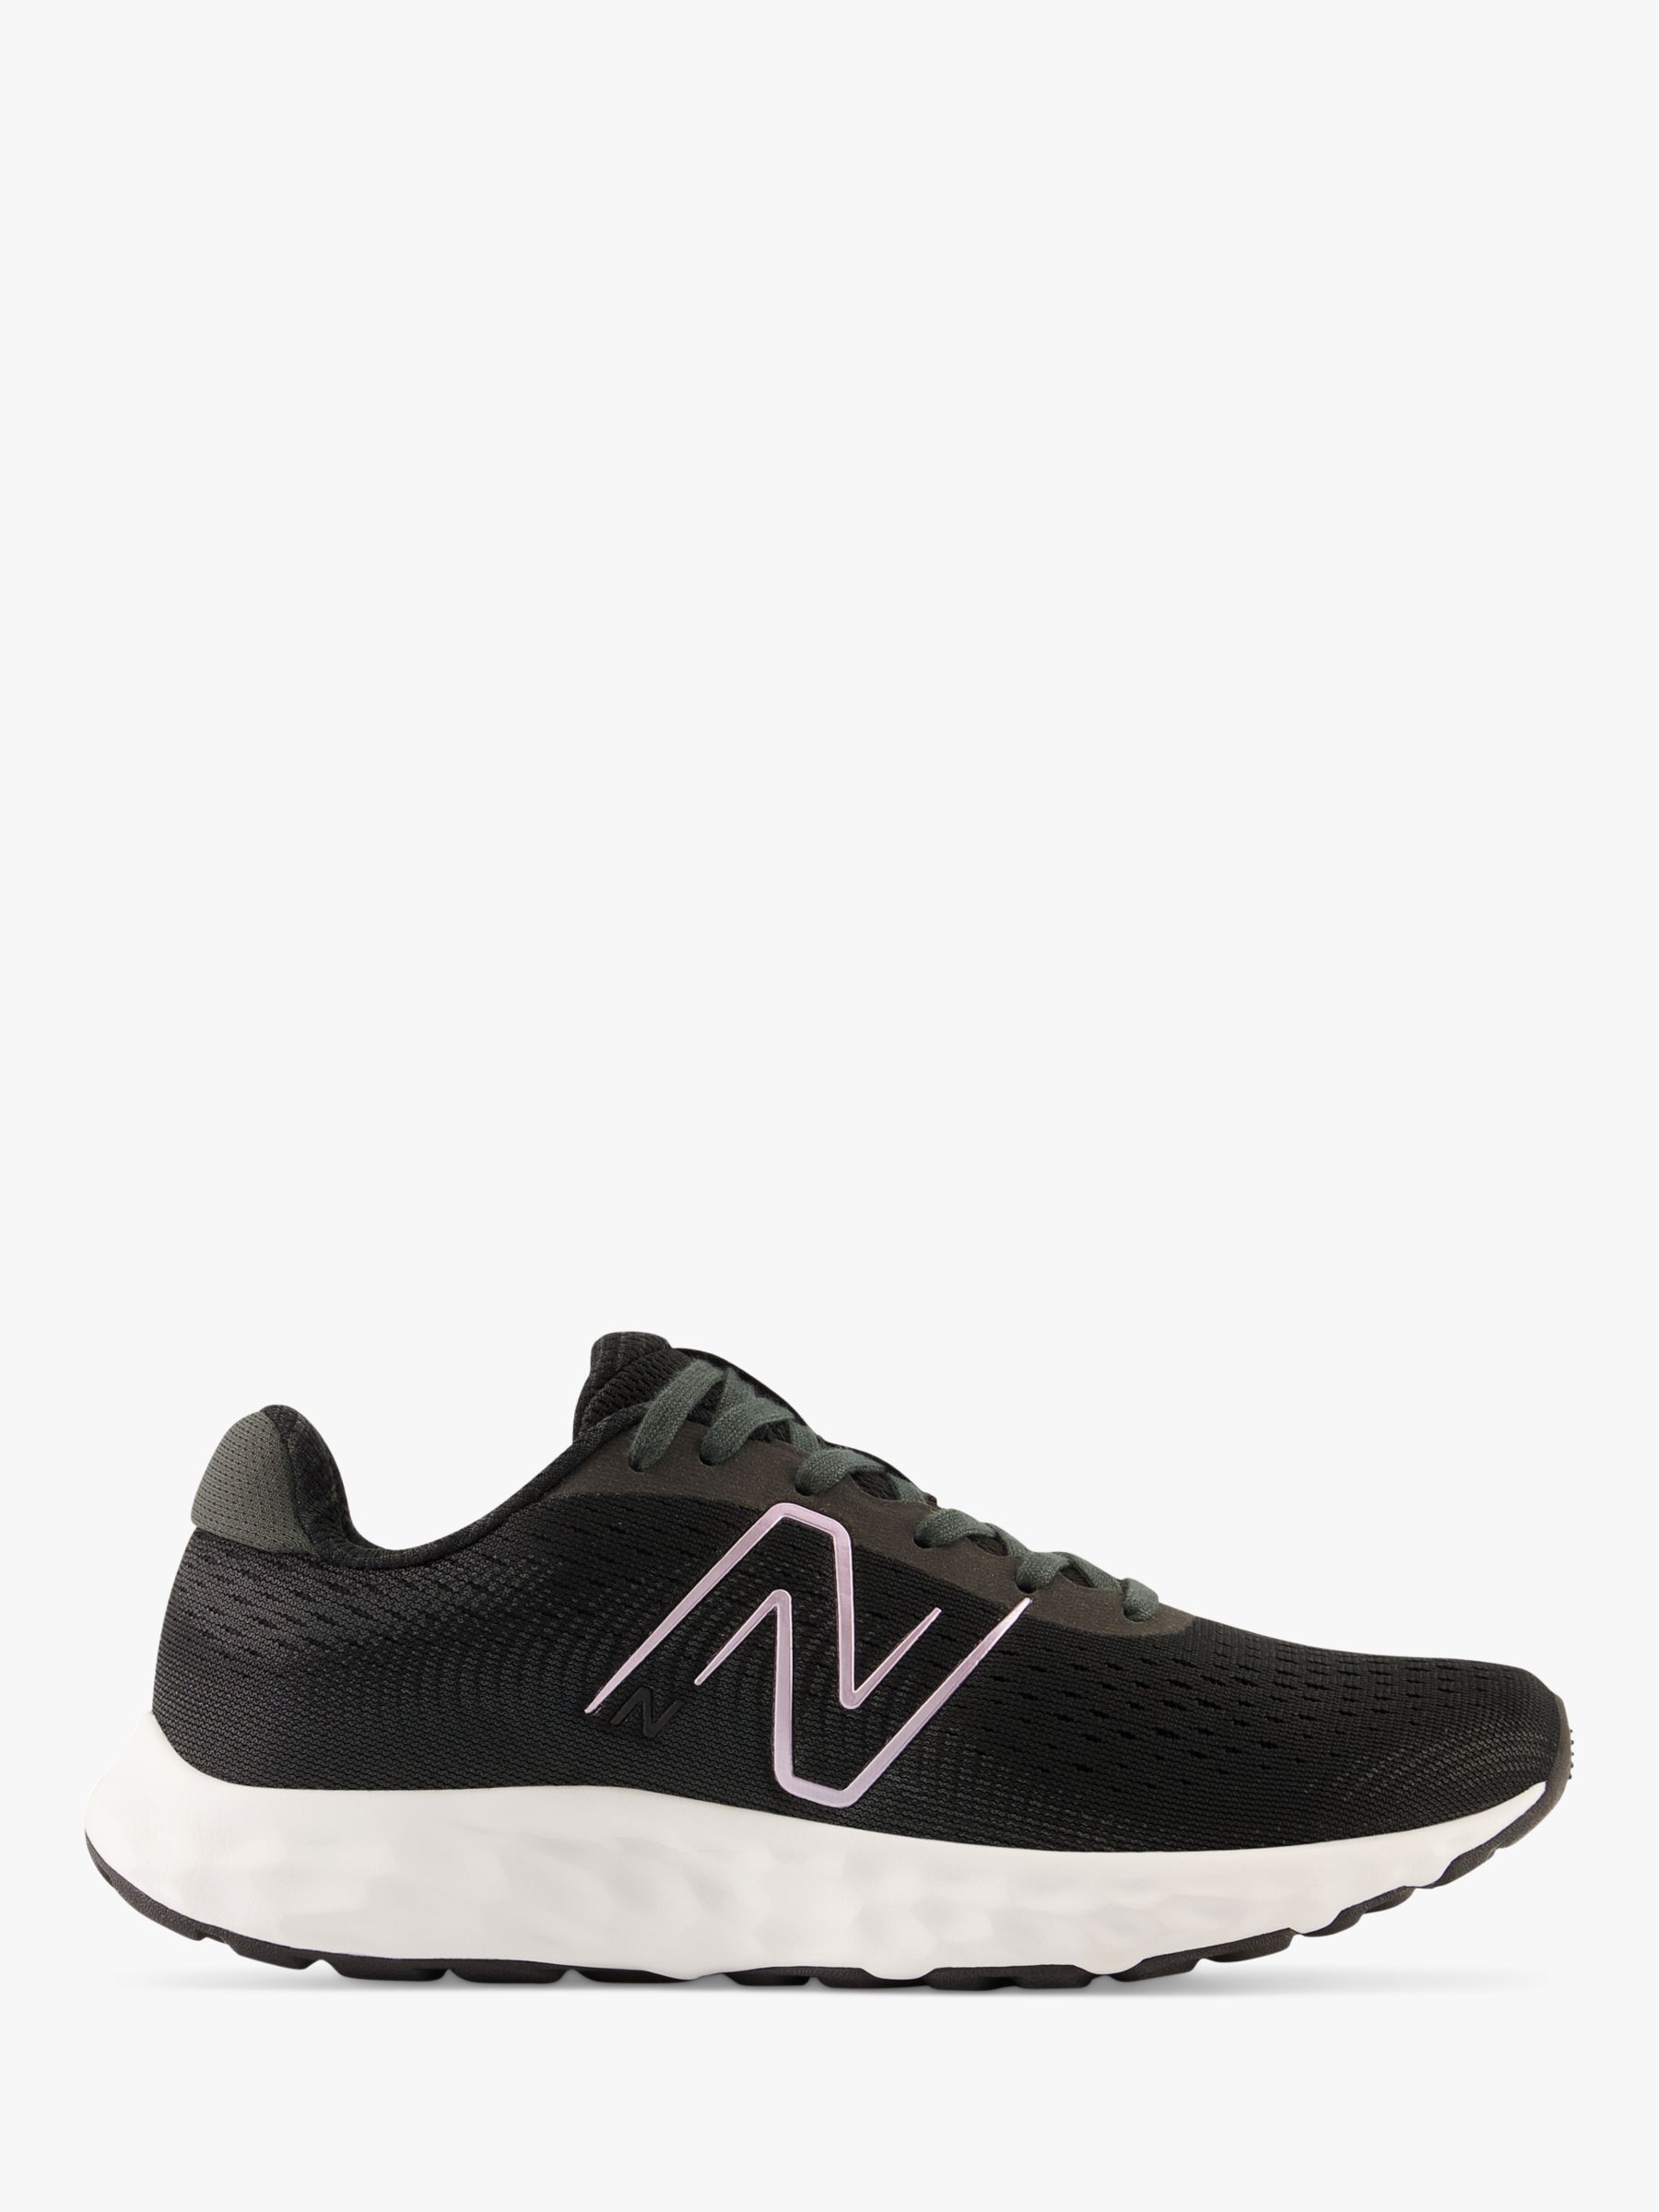 New Balance 520v8 Women's Running Shoes, Black/White, 4